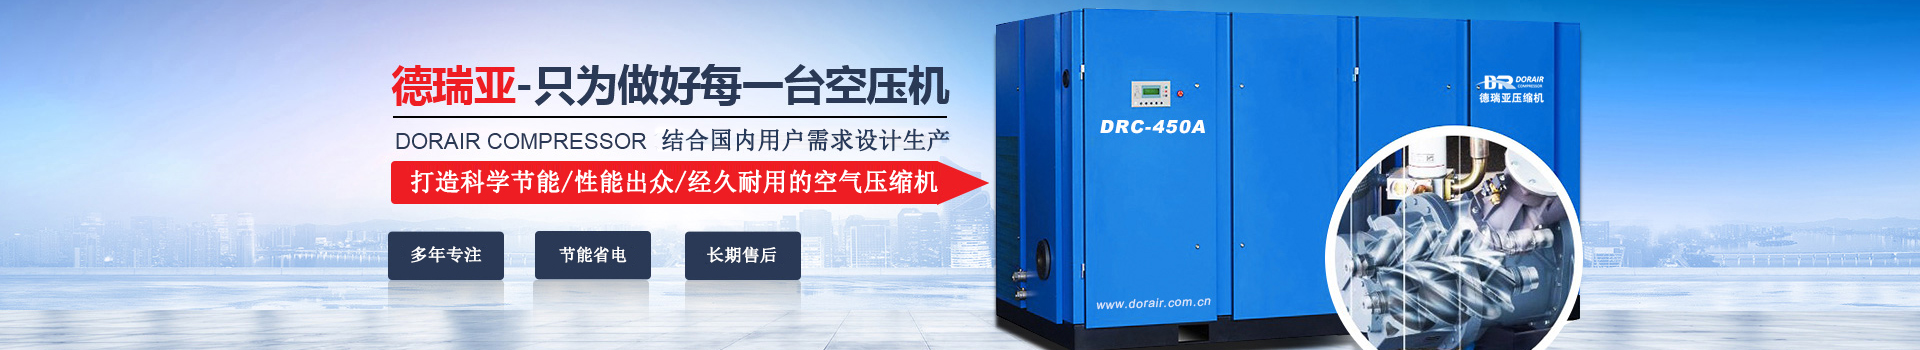 德瑞亞空壓機，中國高品質空壓機倡導者